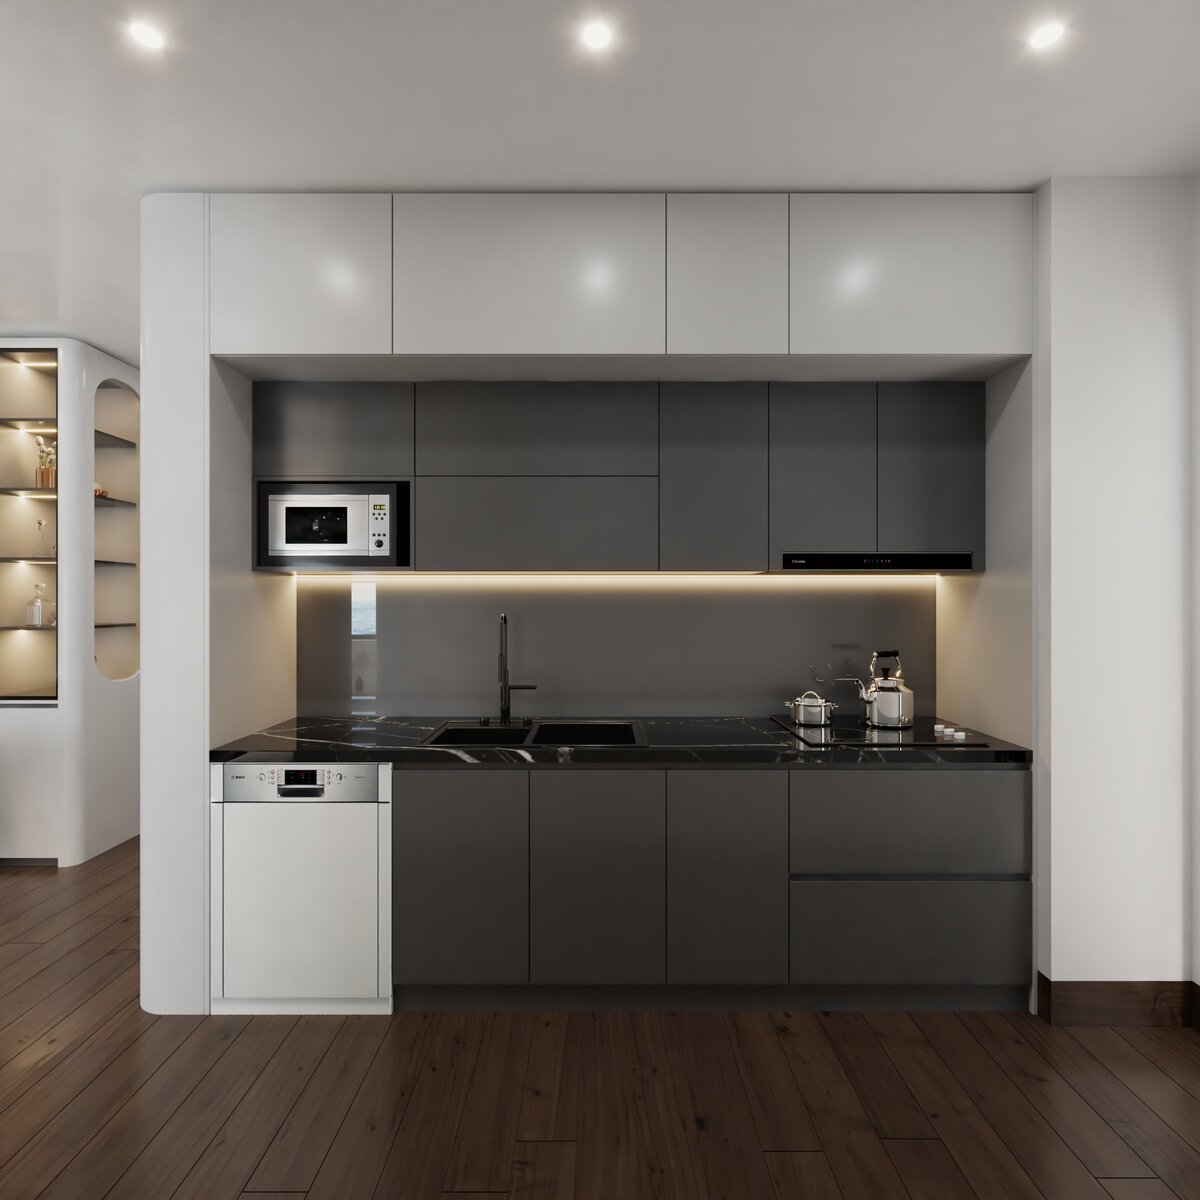 Khu vực bếp được thiết kế hợp lý giúp tiết kiệm không gian